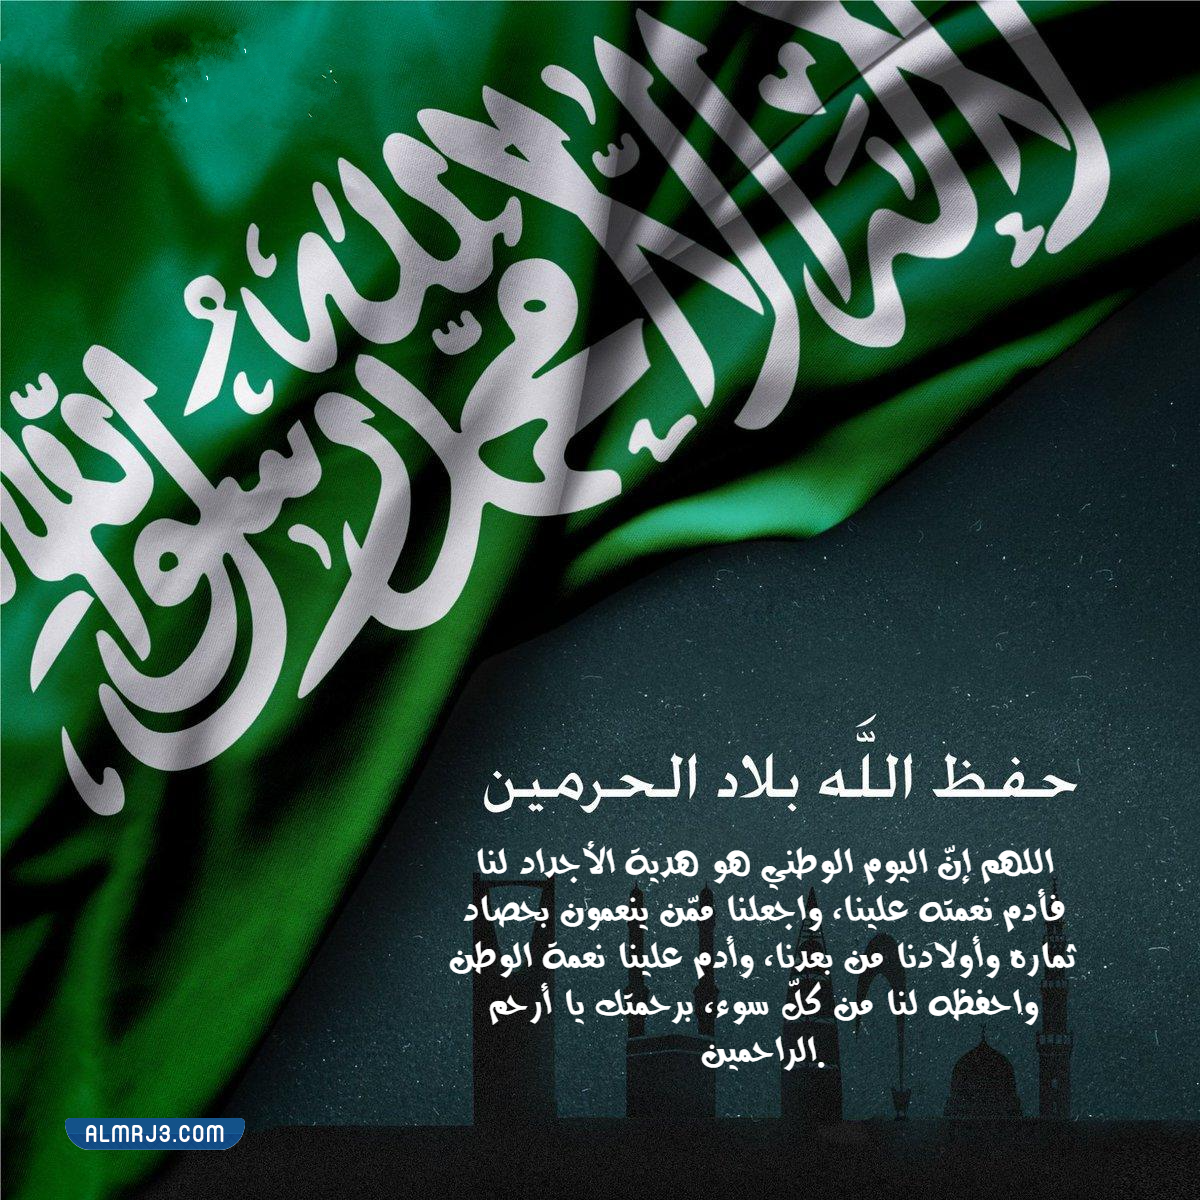 دعاء للوطن الام في اليوم الوطني 92 للمملكة العربية السعودية بالصور